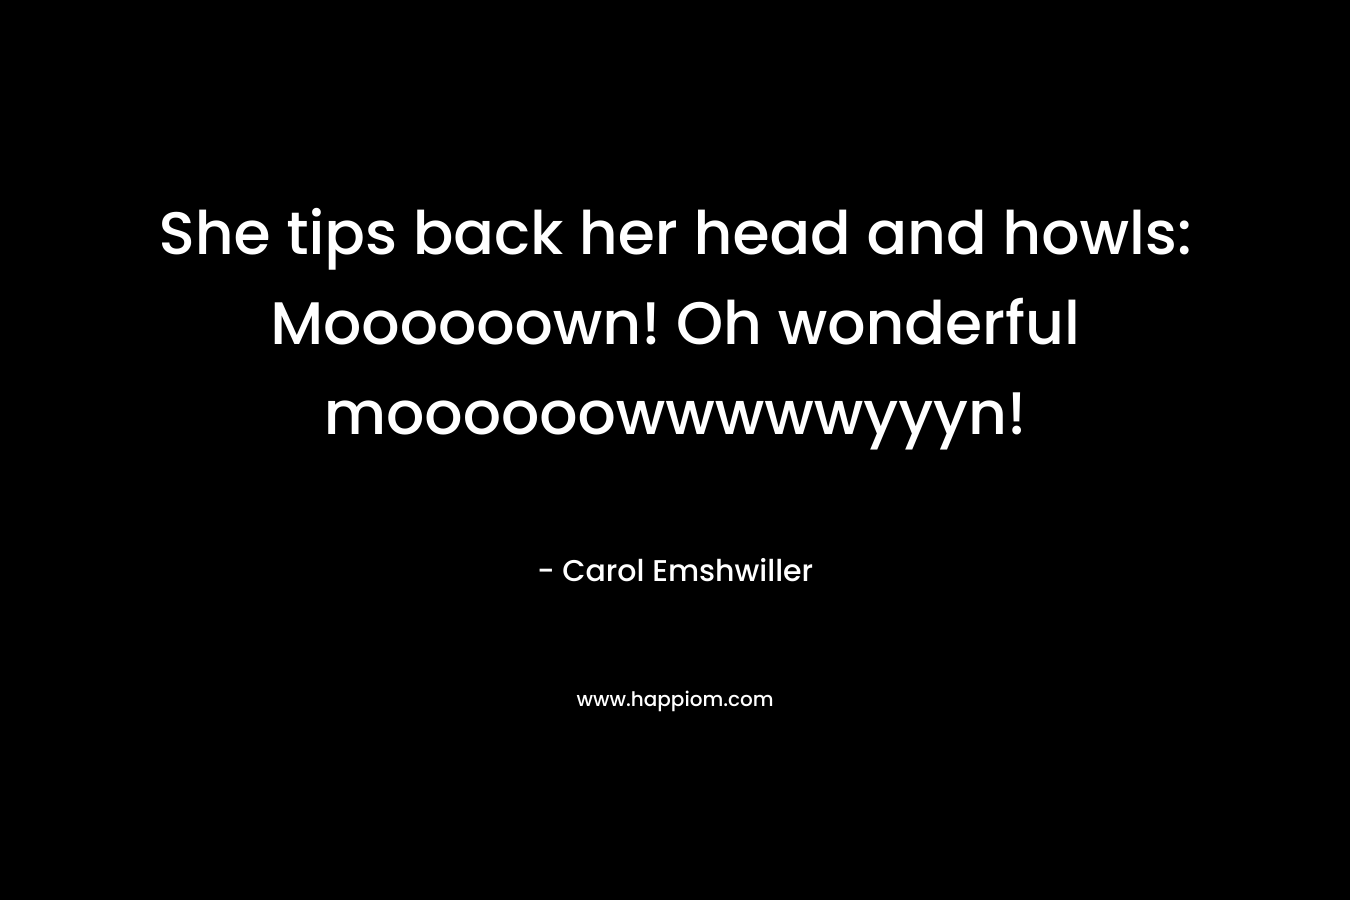 She tips back her head and howls: Moooooown! Oh wonderful moooooowwwwwyyyn! – Carol Emshwiller